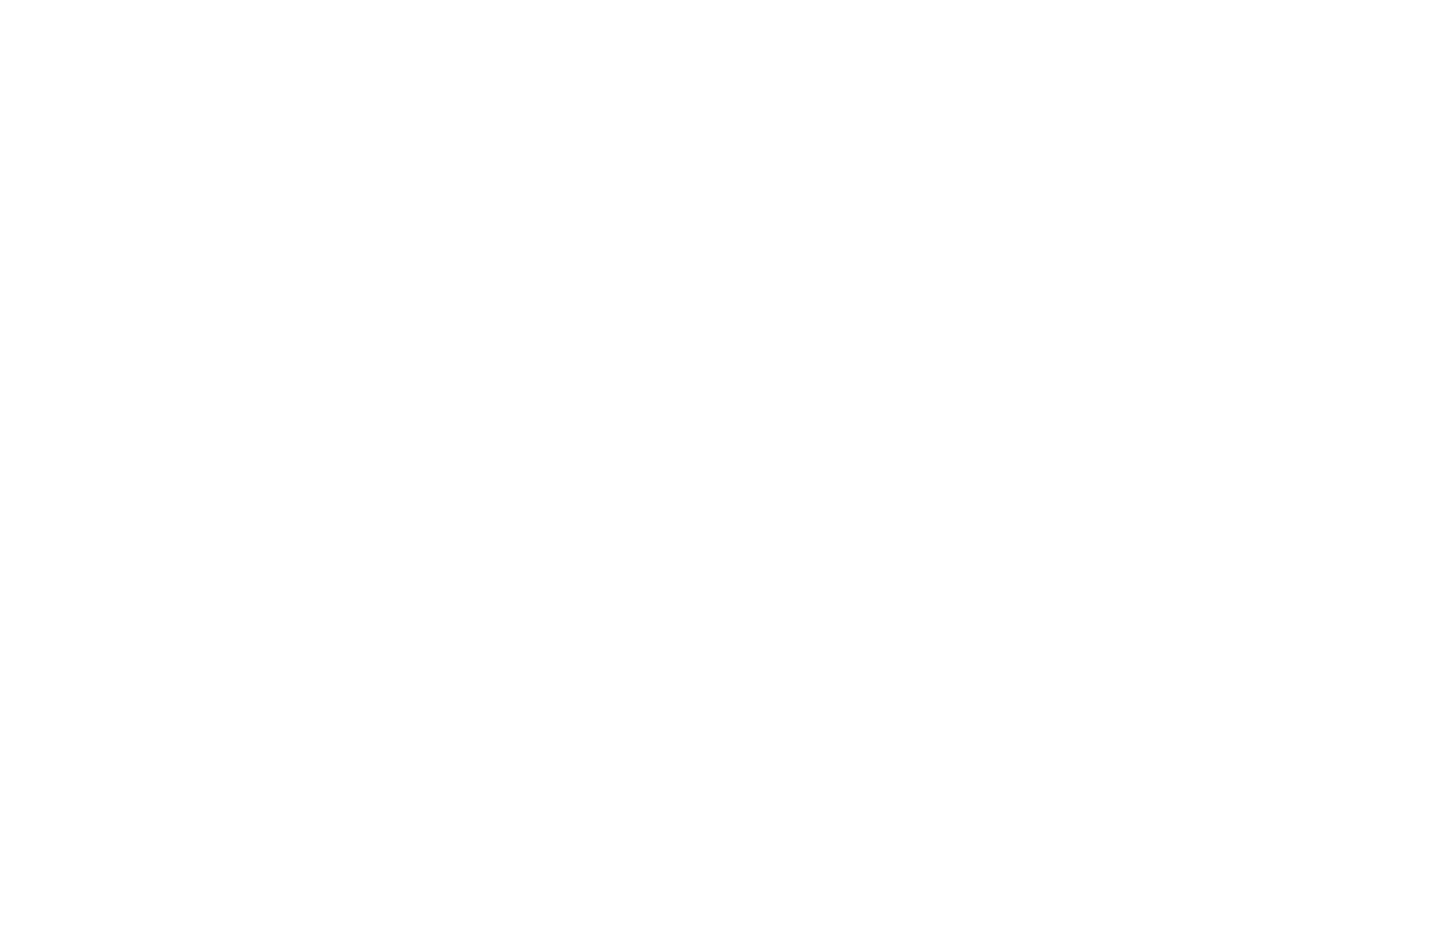 Italian culinary masters logo